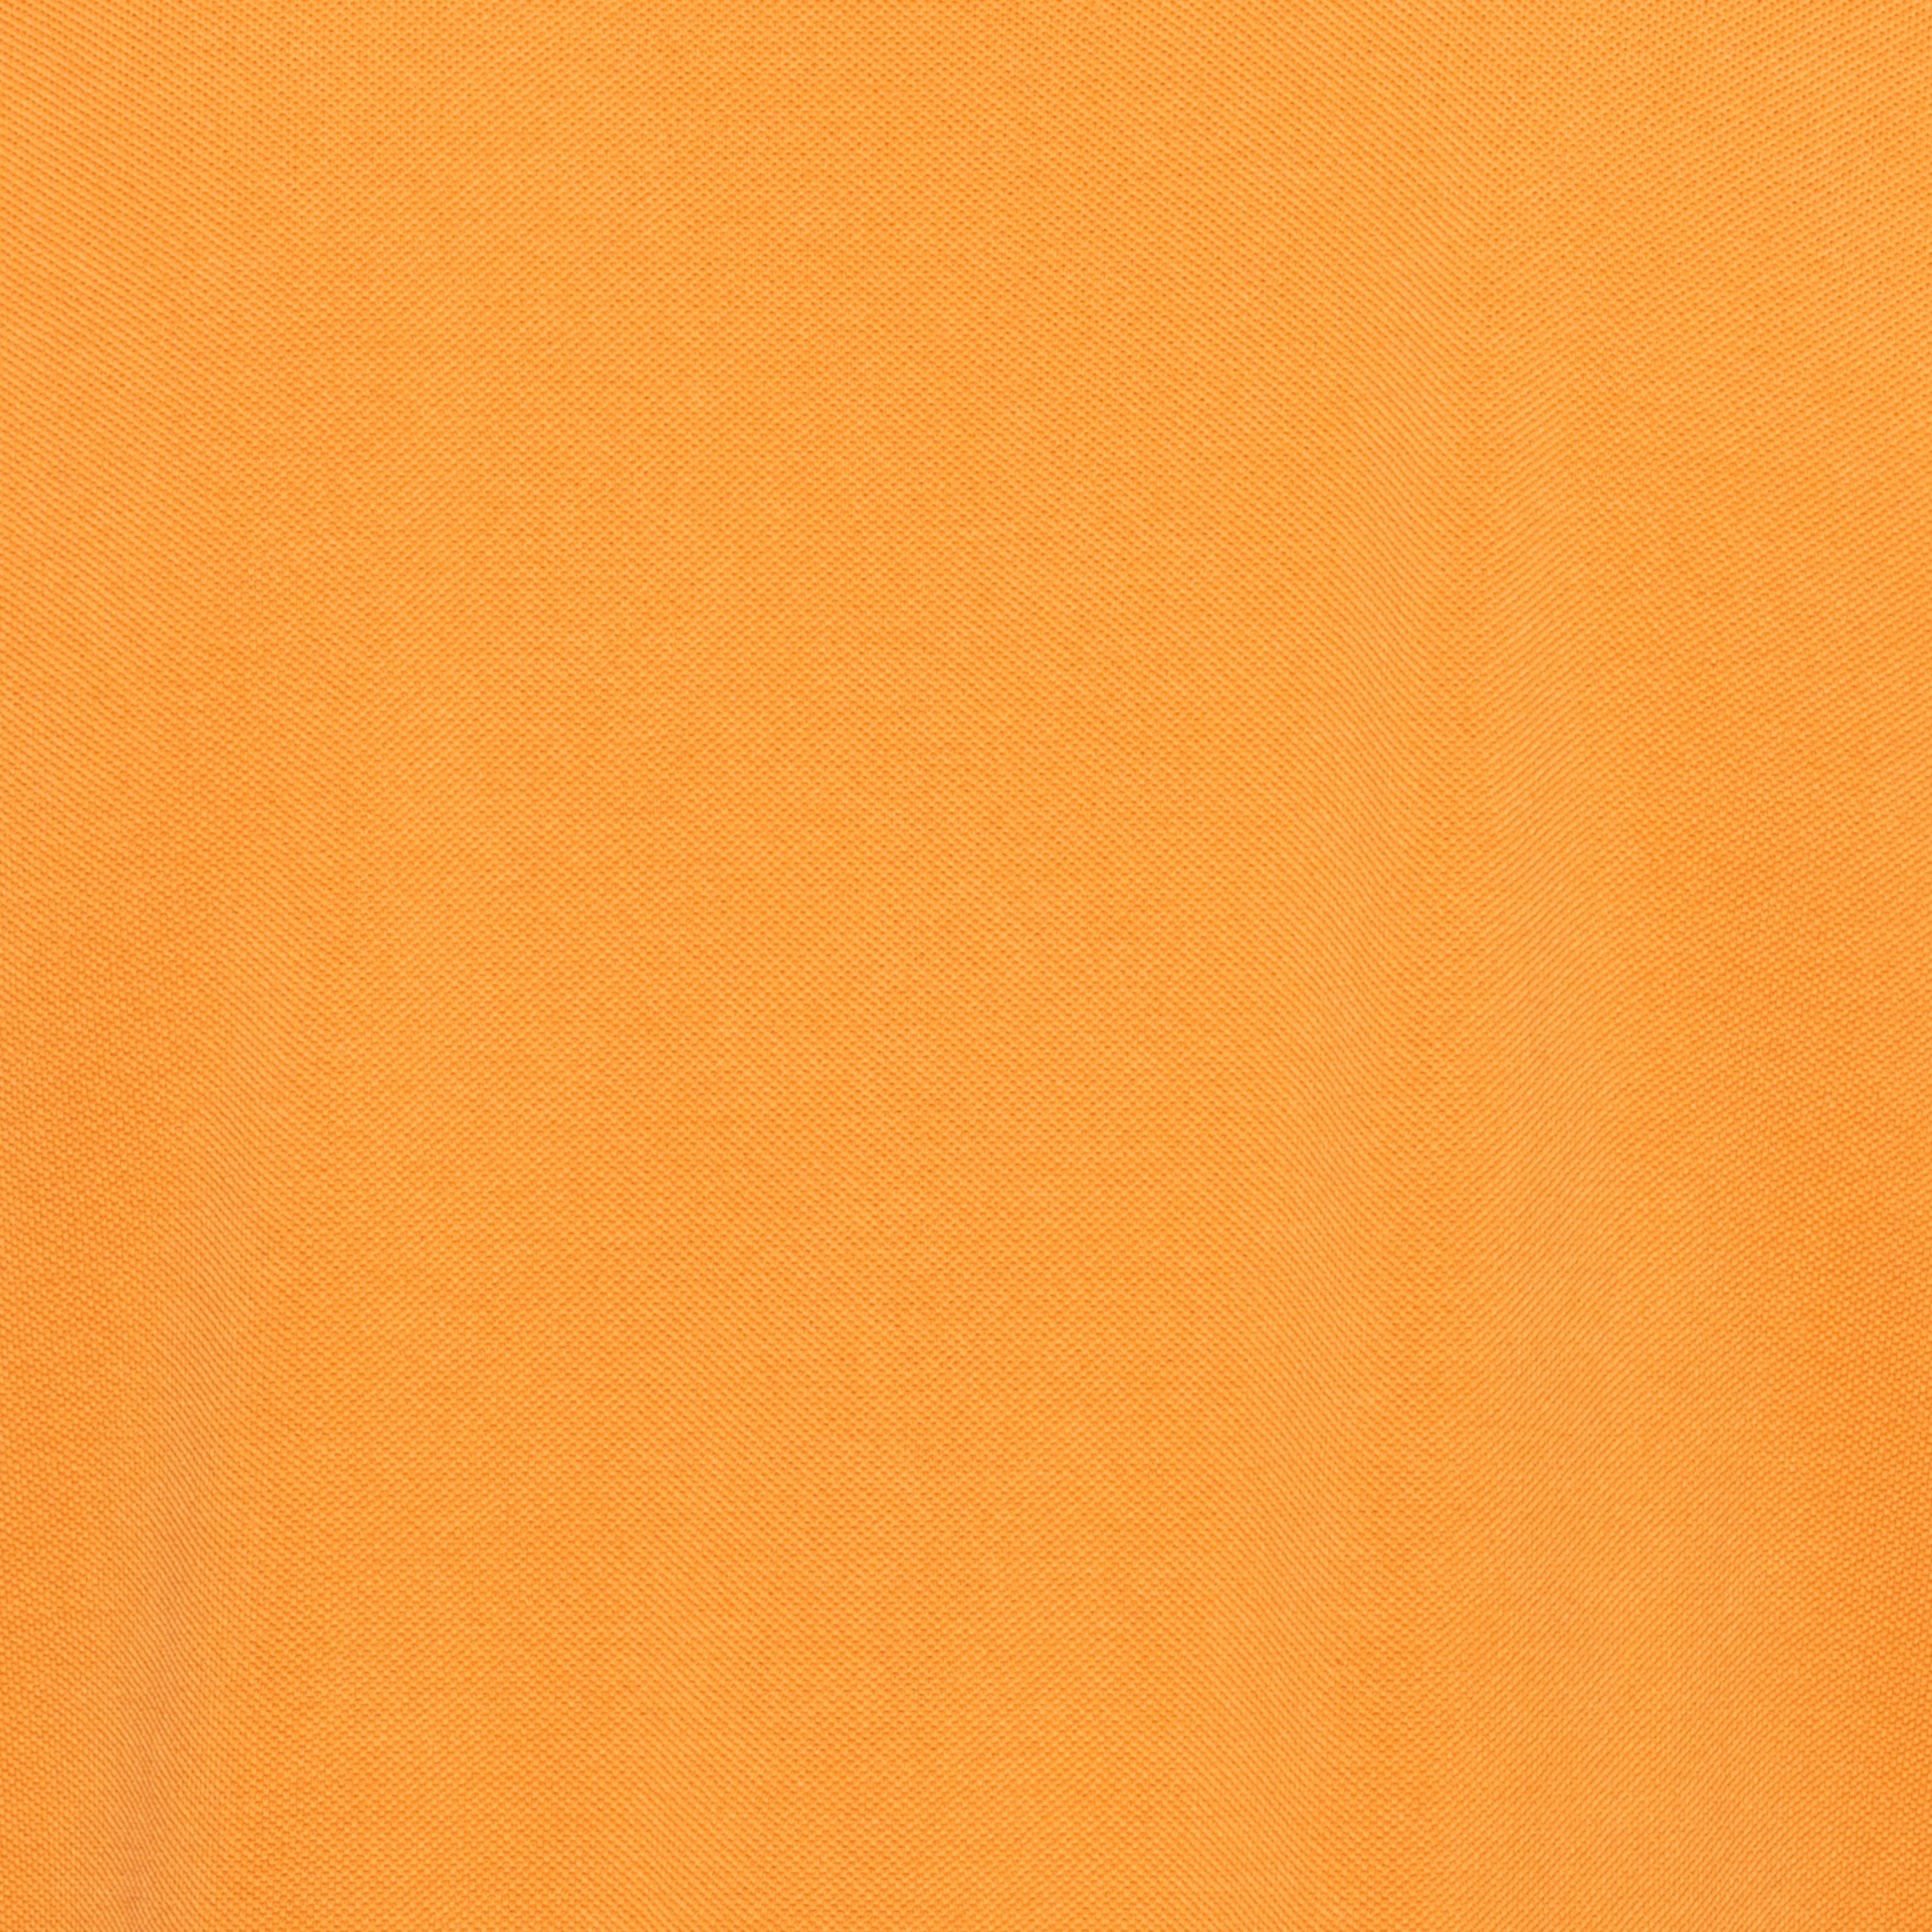 FEDELI "Steve" Orange Cotton Pique Long Sleeve Polo Shirt EU 52 NEW US L